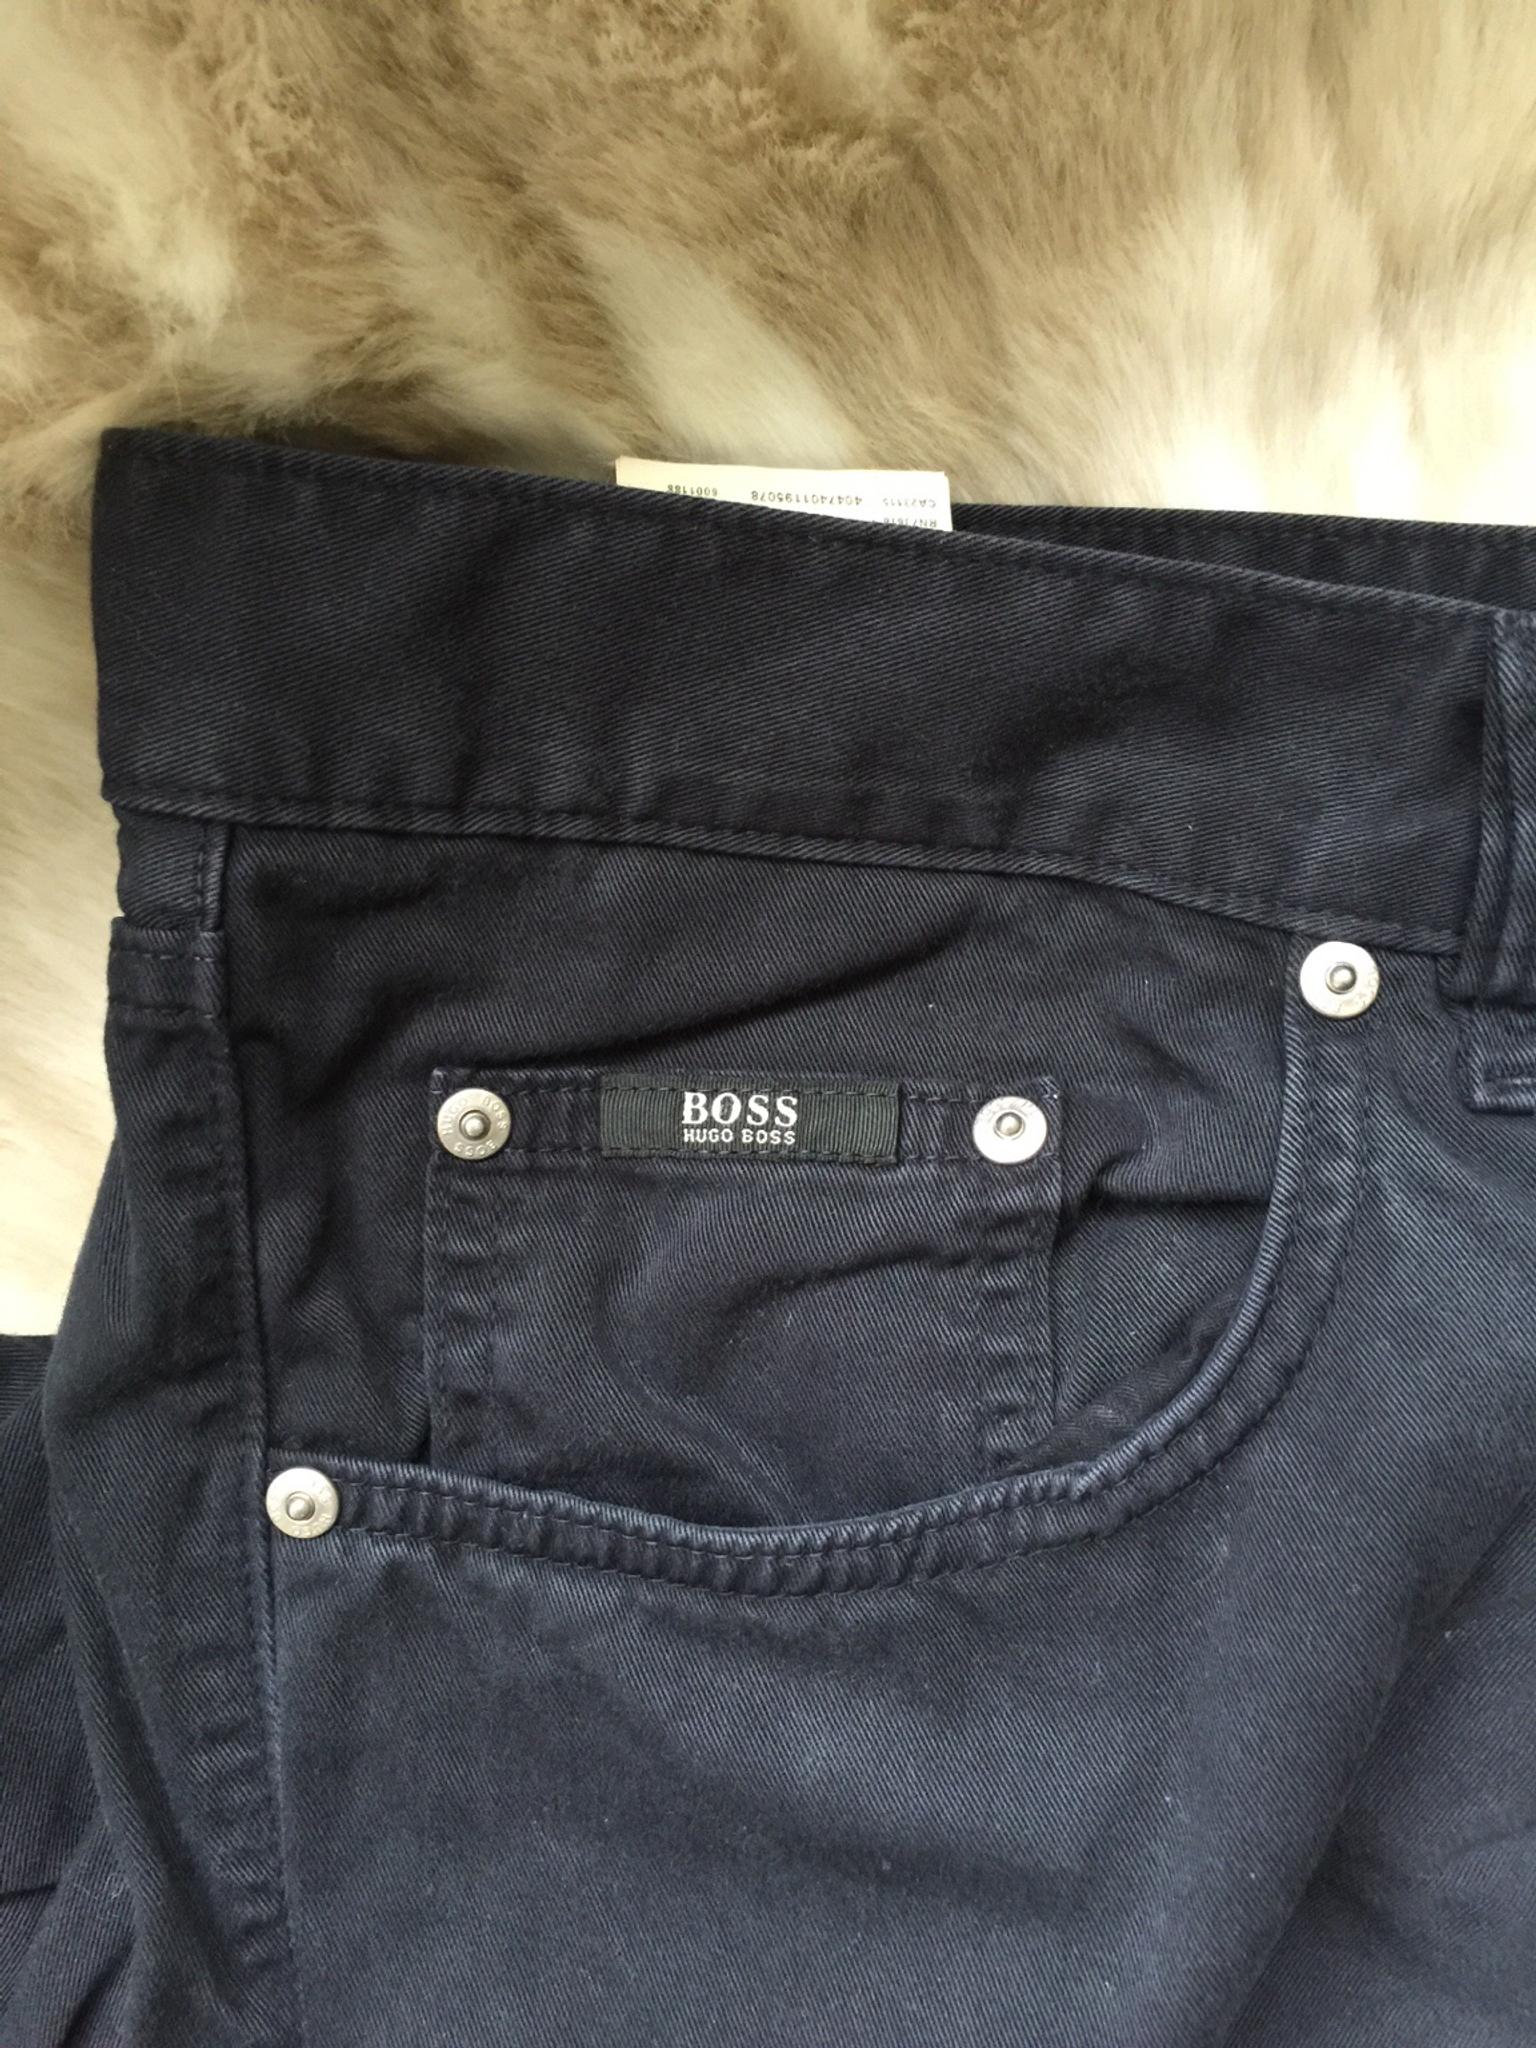 اثار دفعة الصفيح boss jeans price 